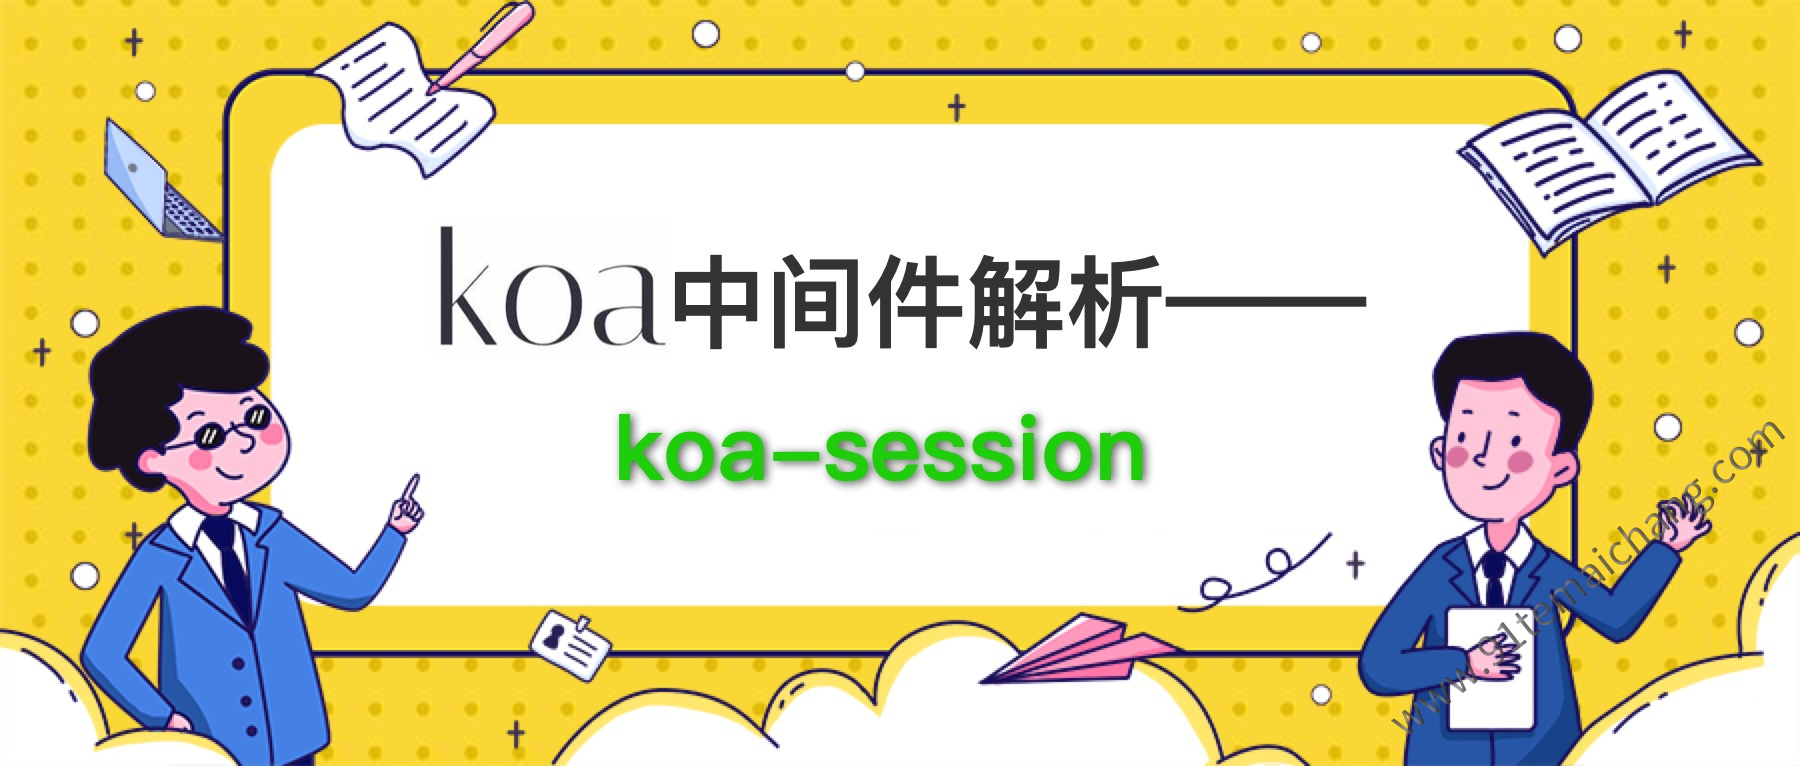 会话管理中间件：koa-session